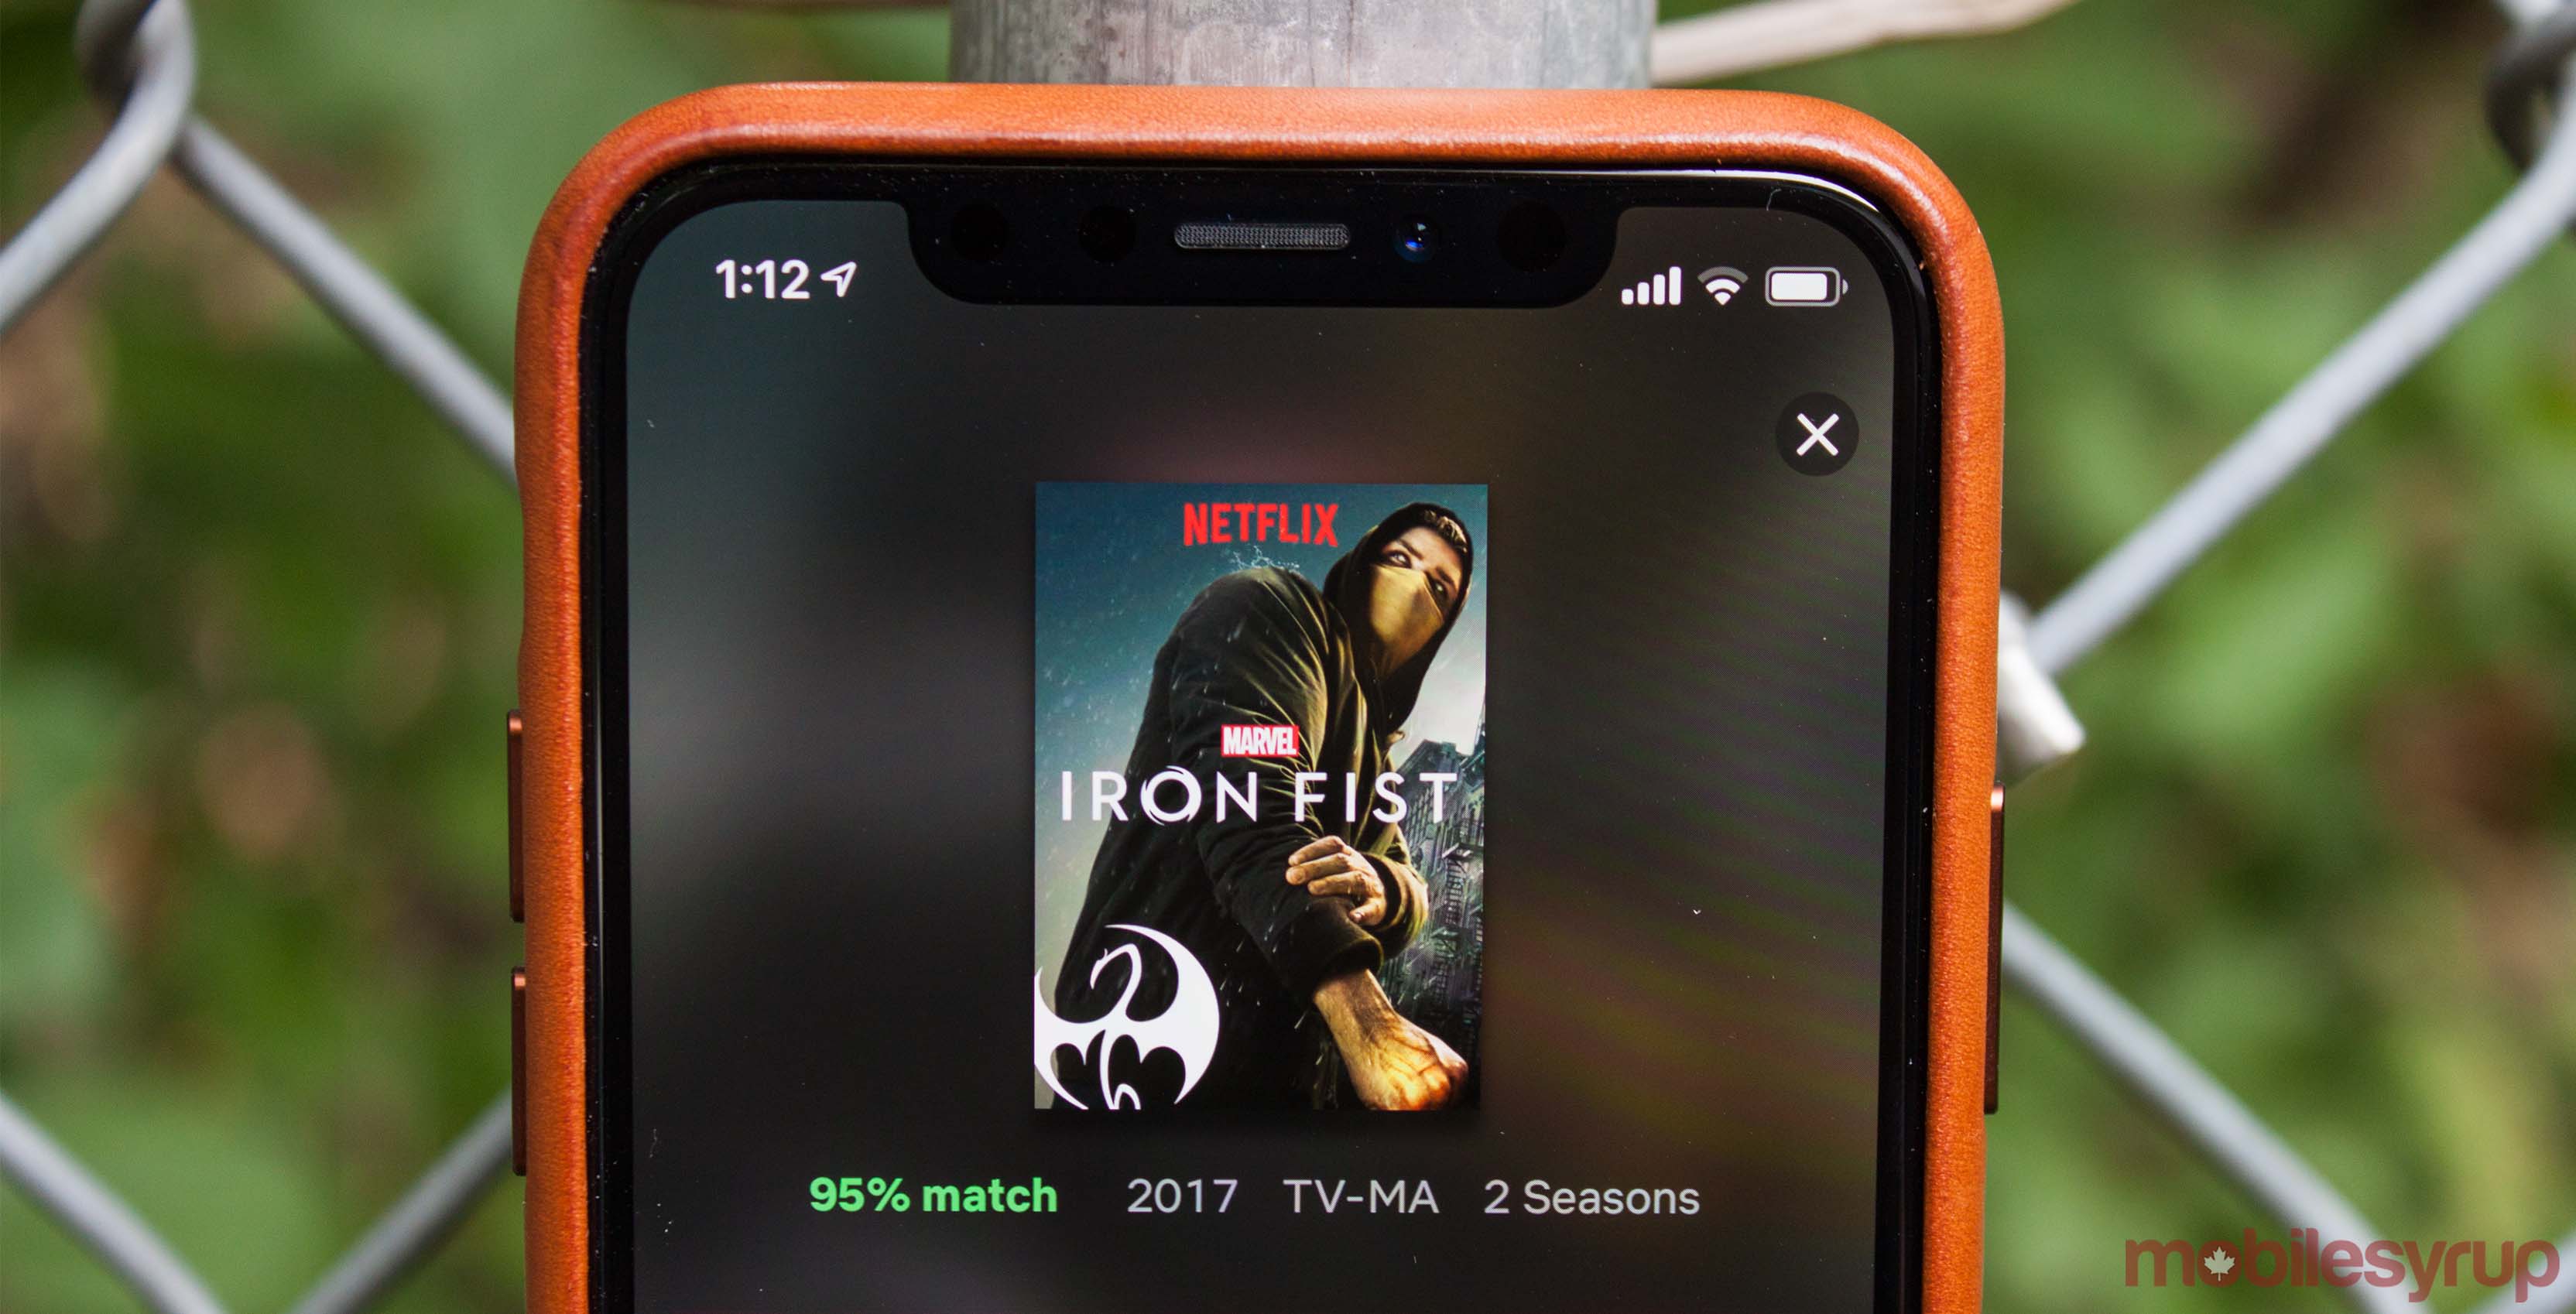 Iron Fist on Netflix